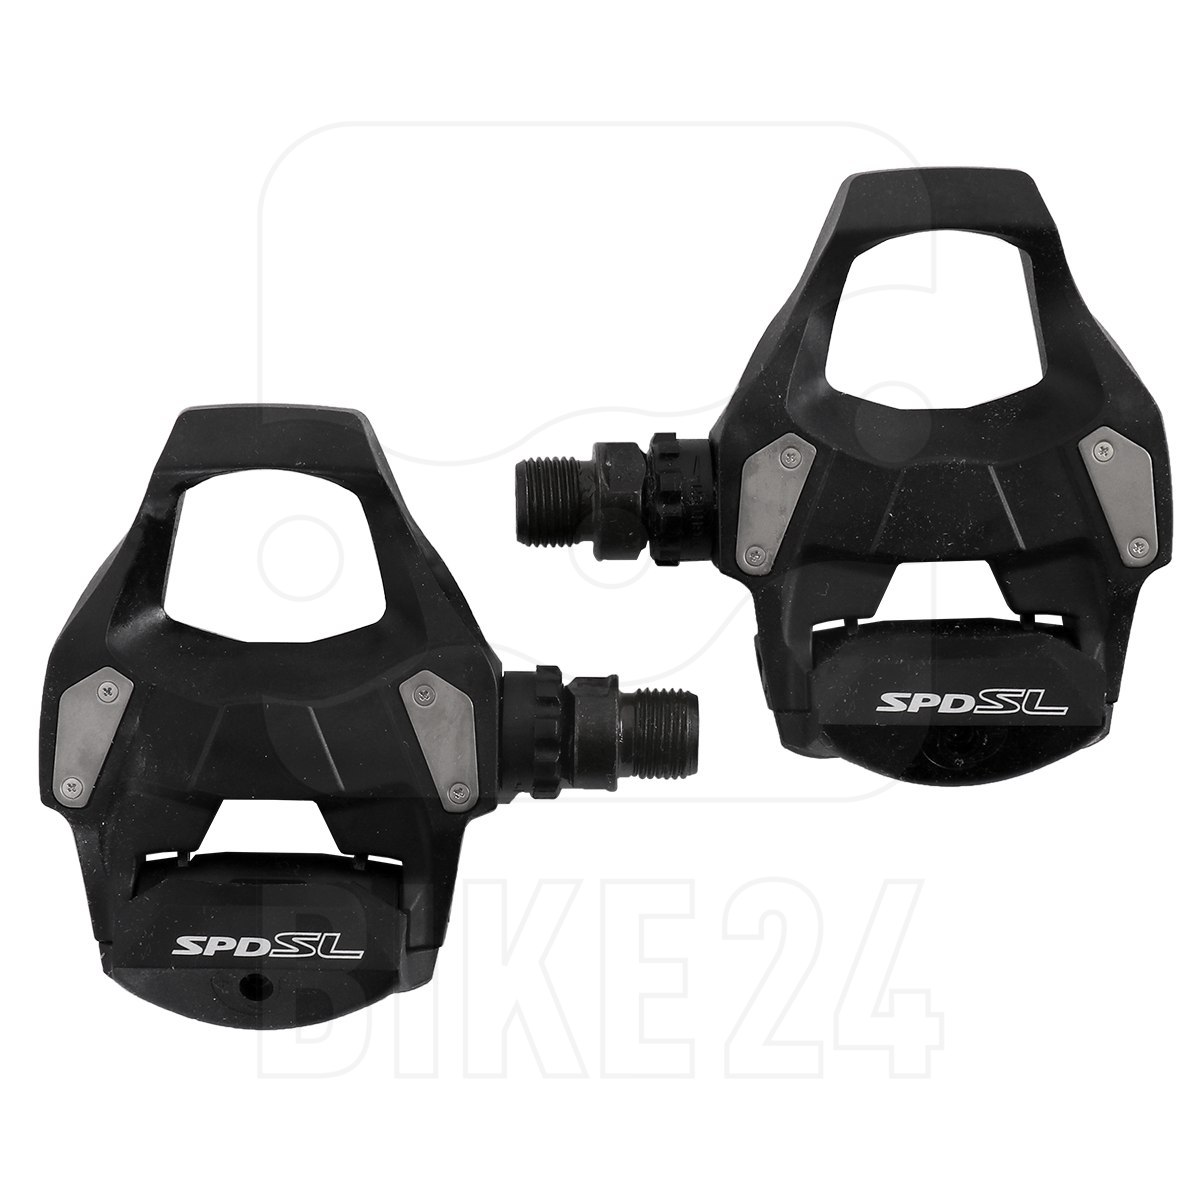 Produktbild von Shimano PD-RS500 SPD-SL Pedal - schwarz